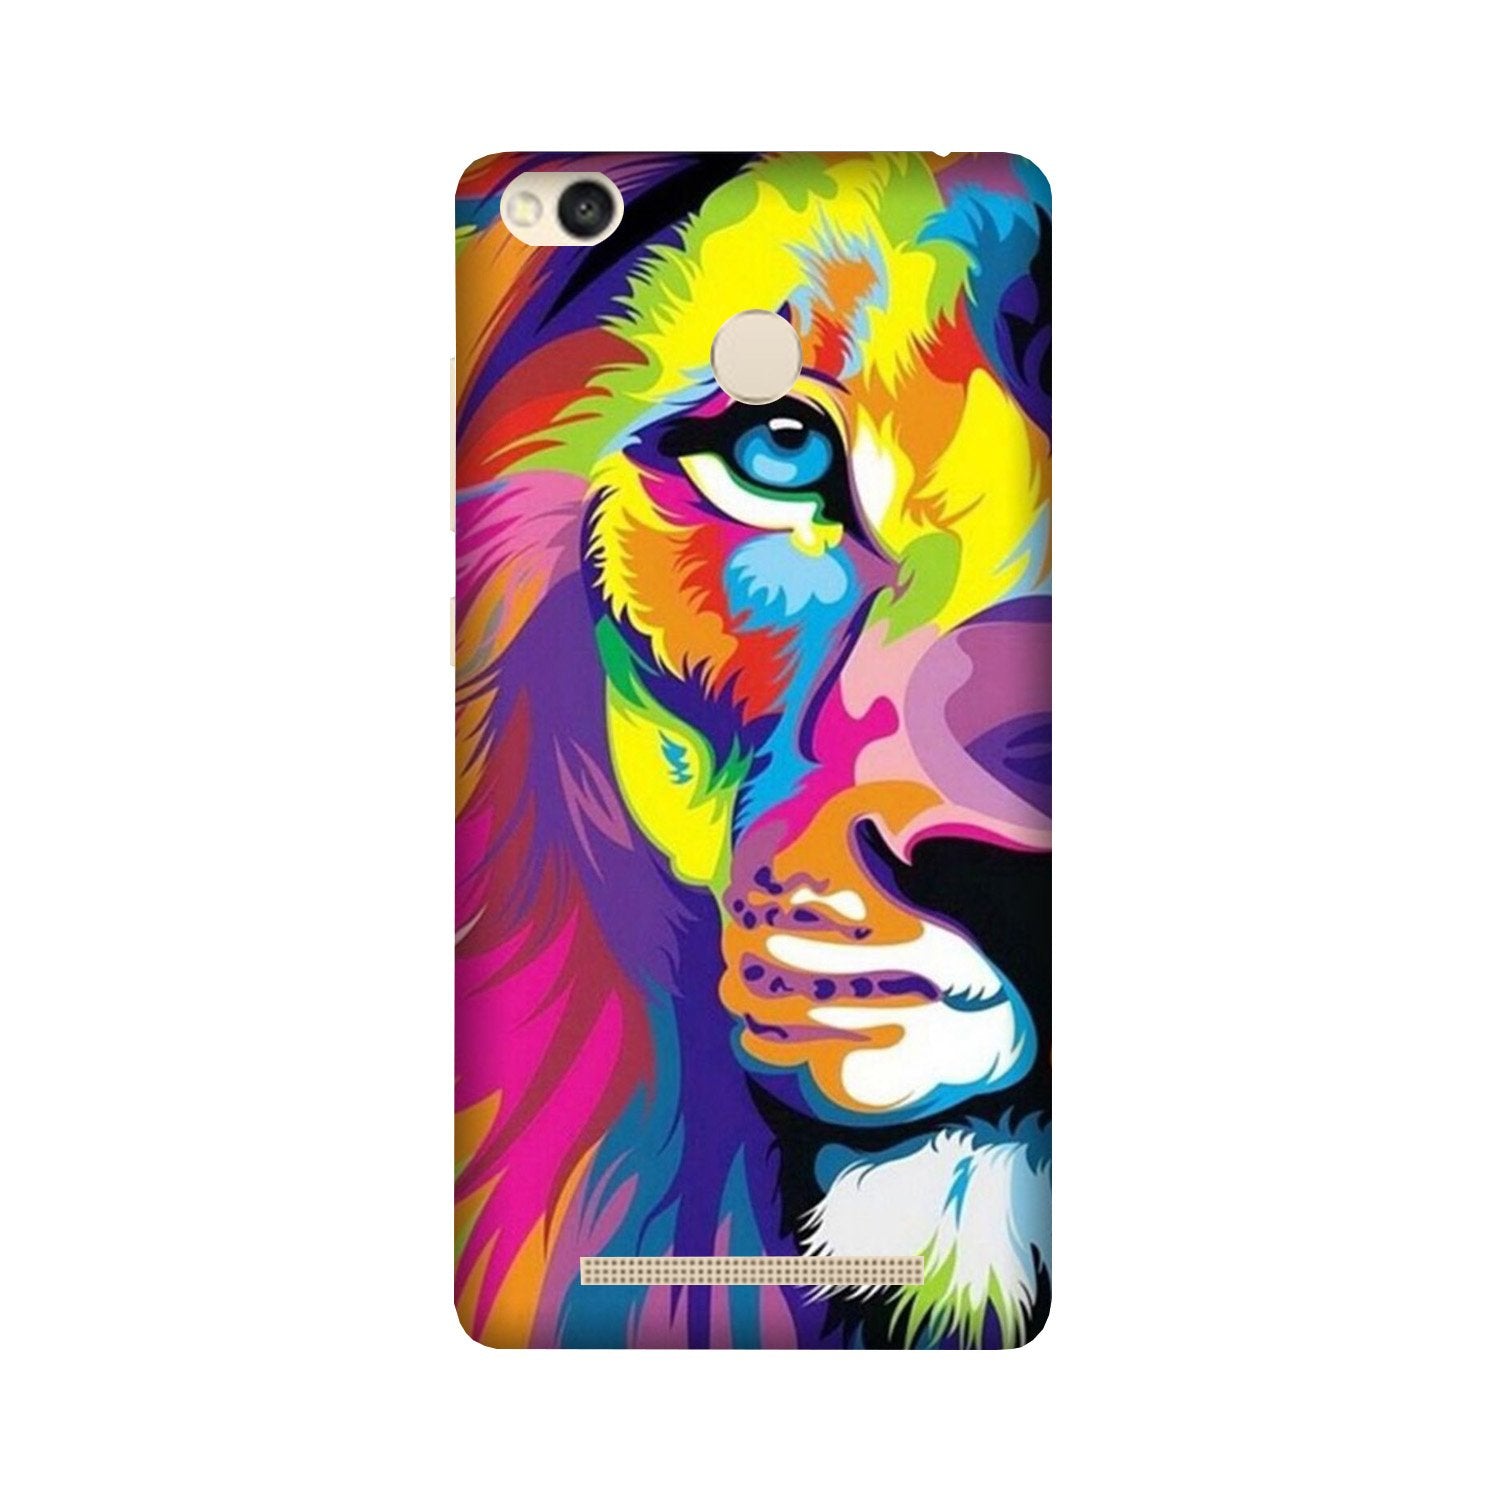 Colorful Lion Case for Redmi 3S Prime  (Design - 110)